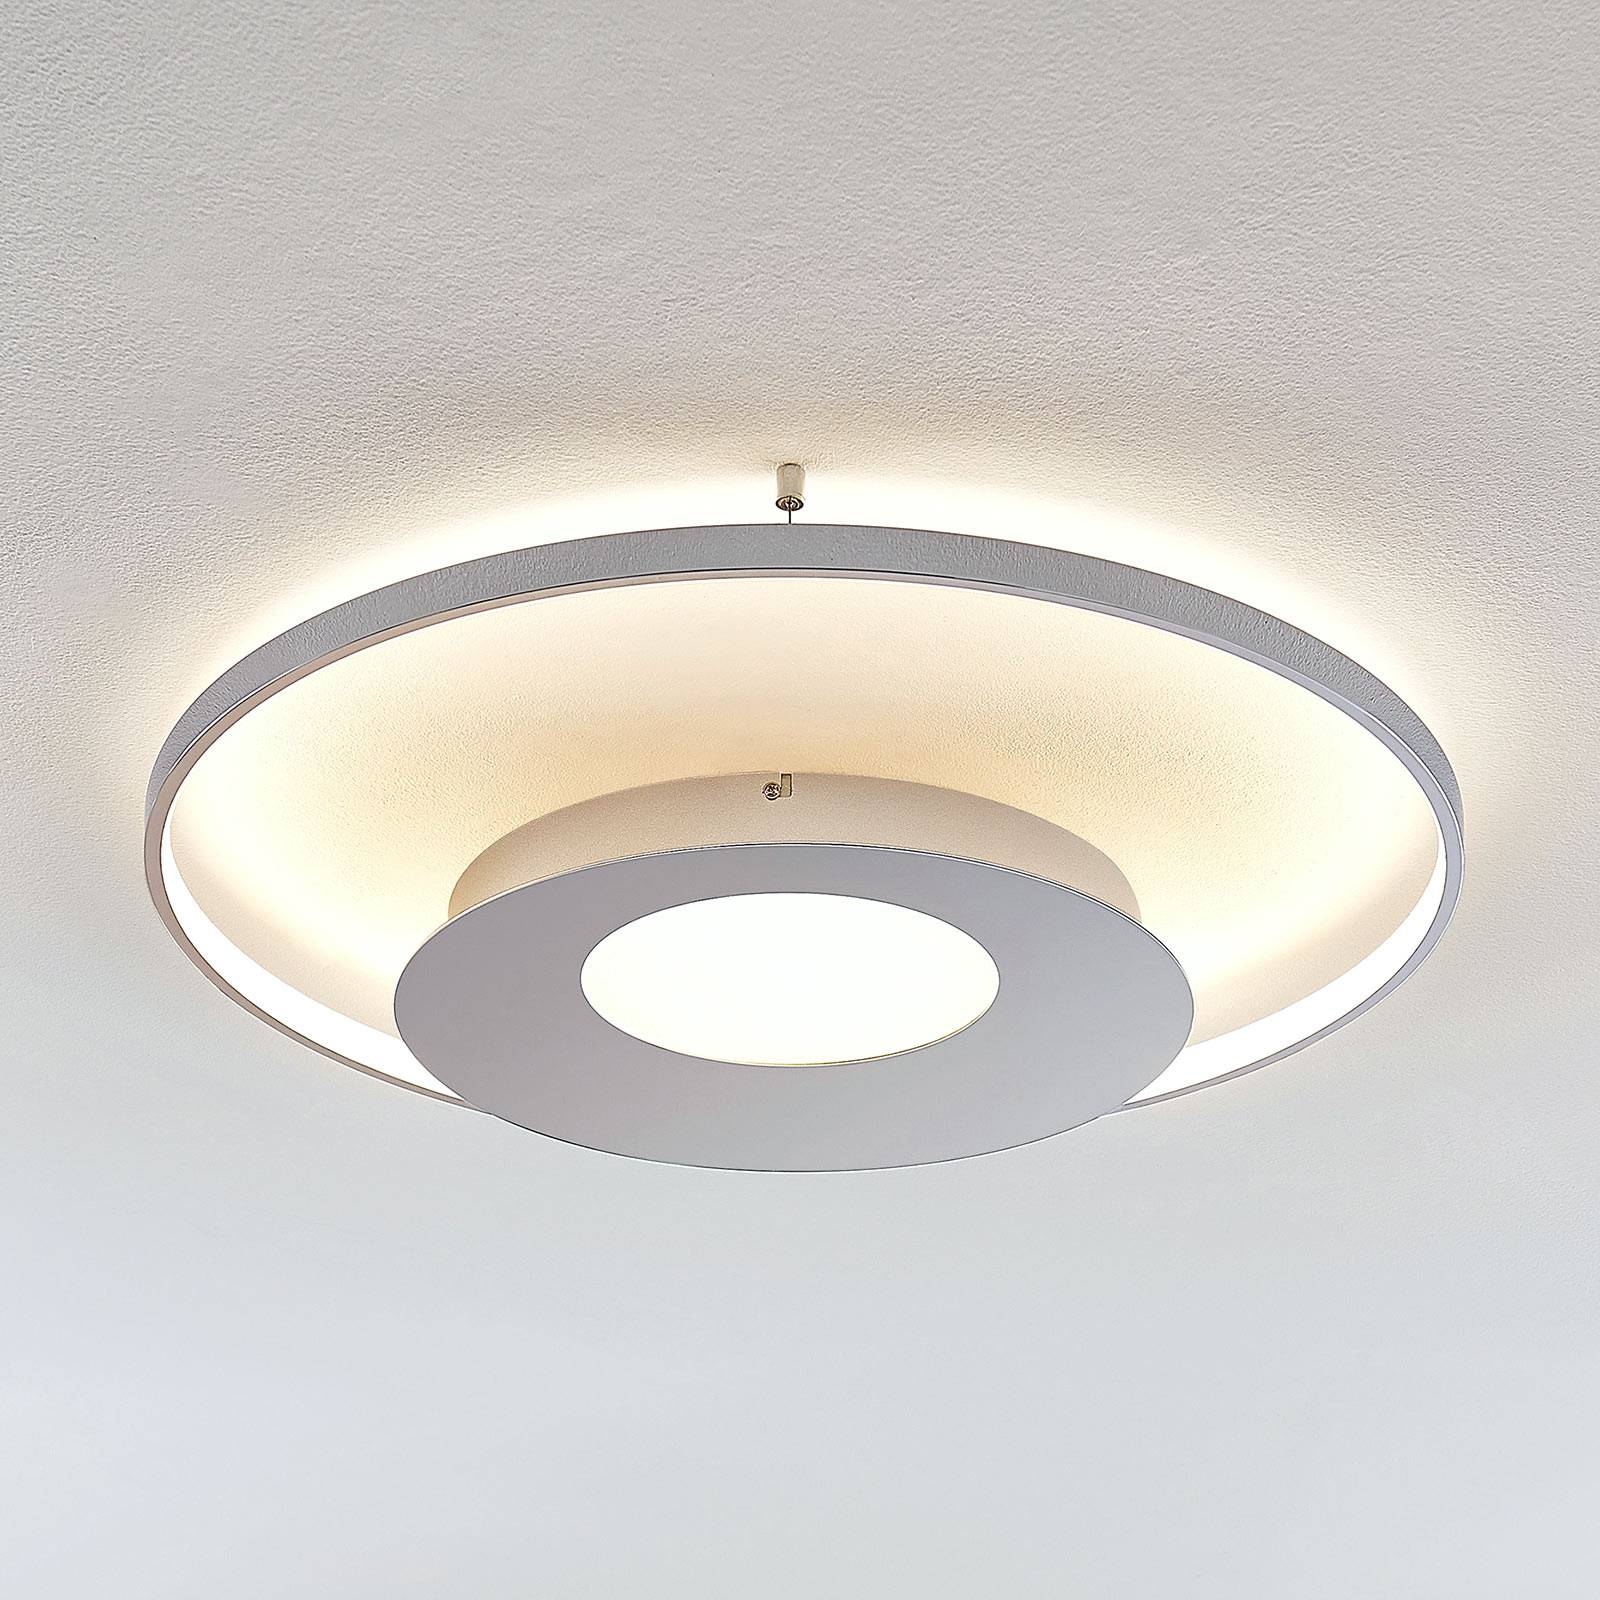 Lampa sufitowa LED Anays, okrągła, 62 cm